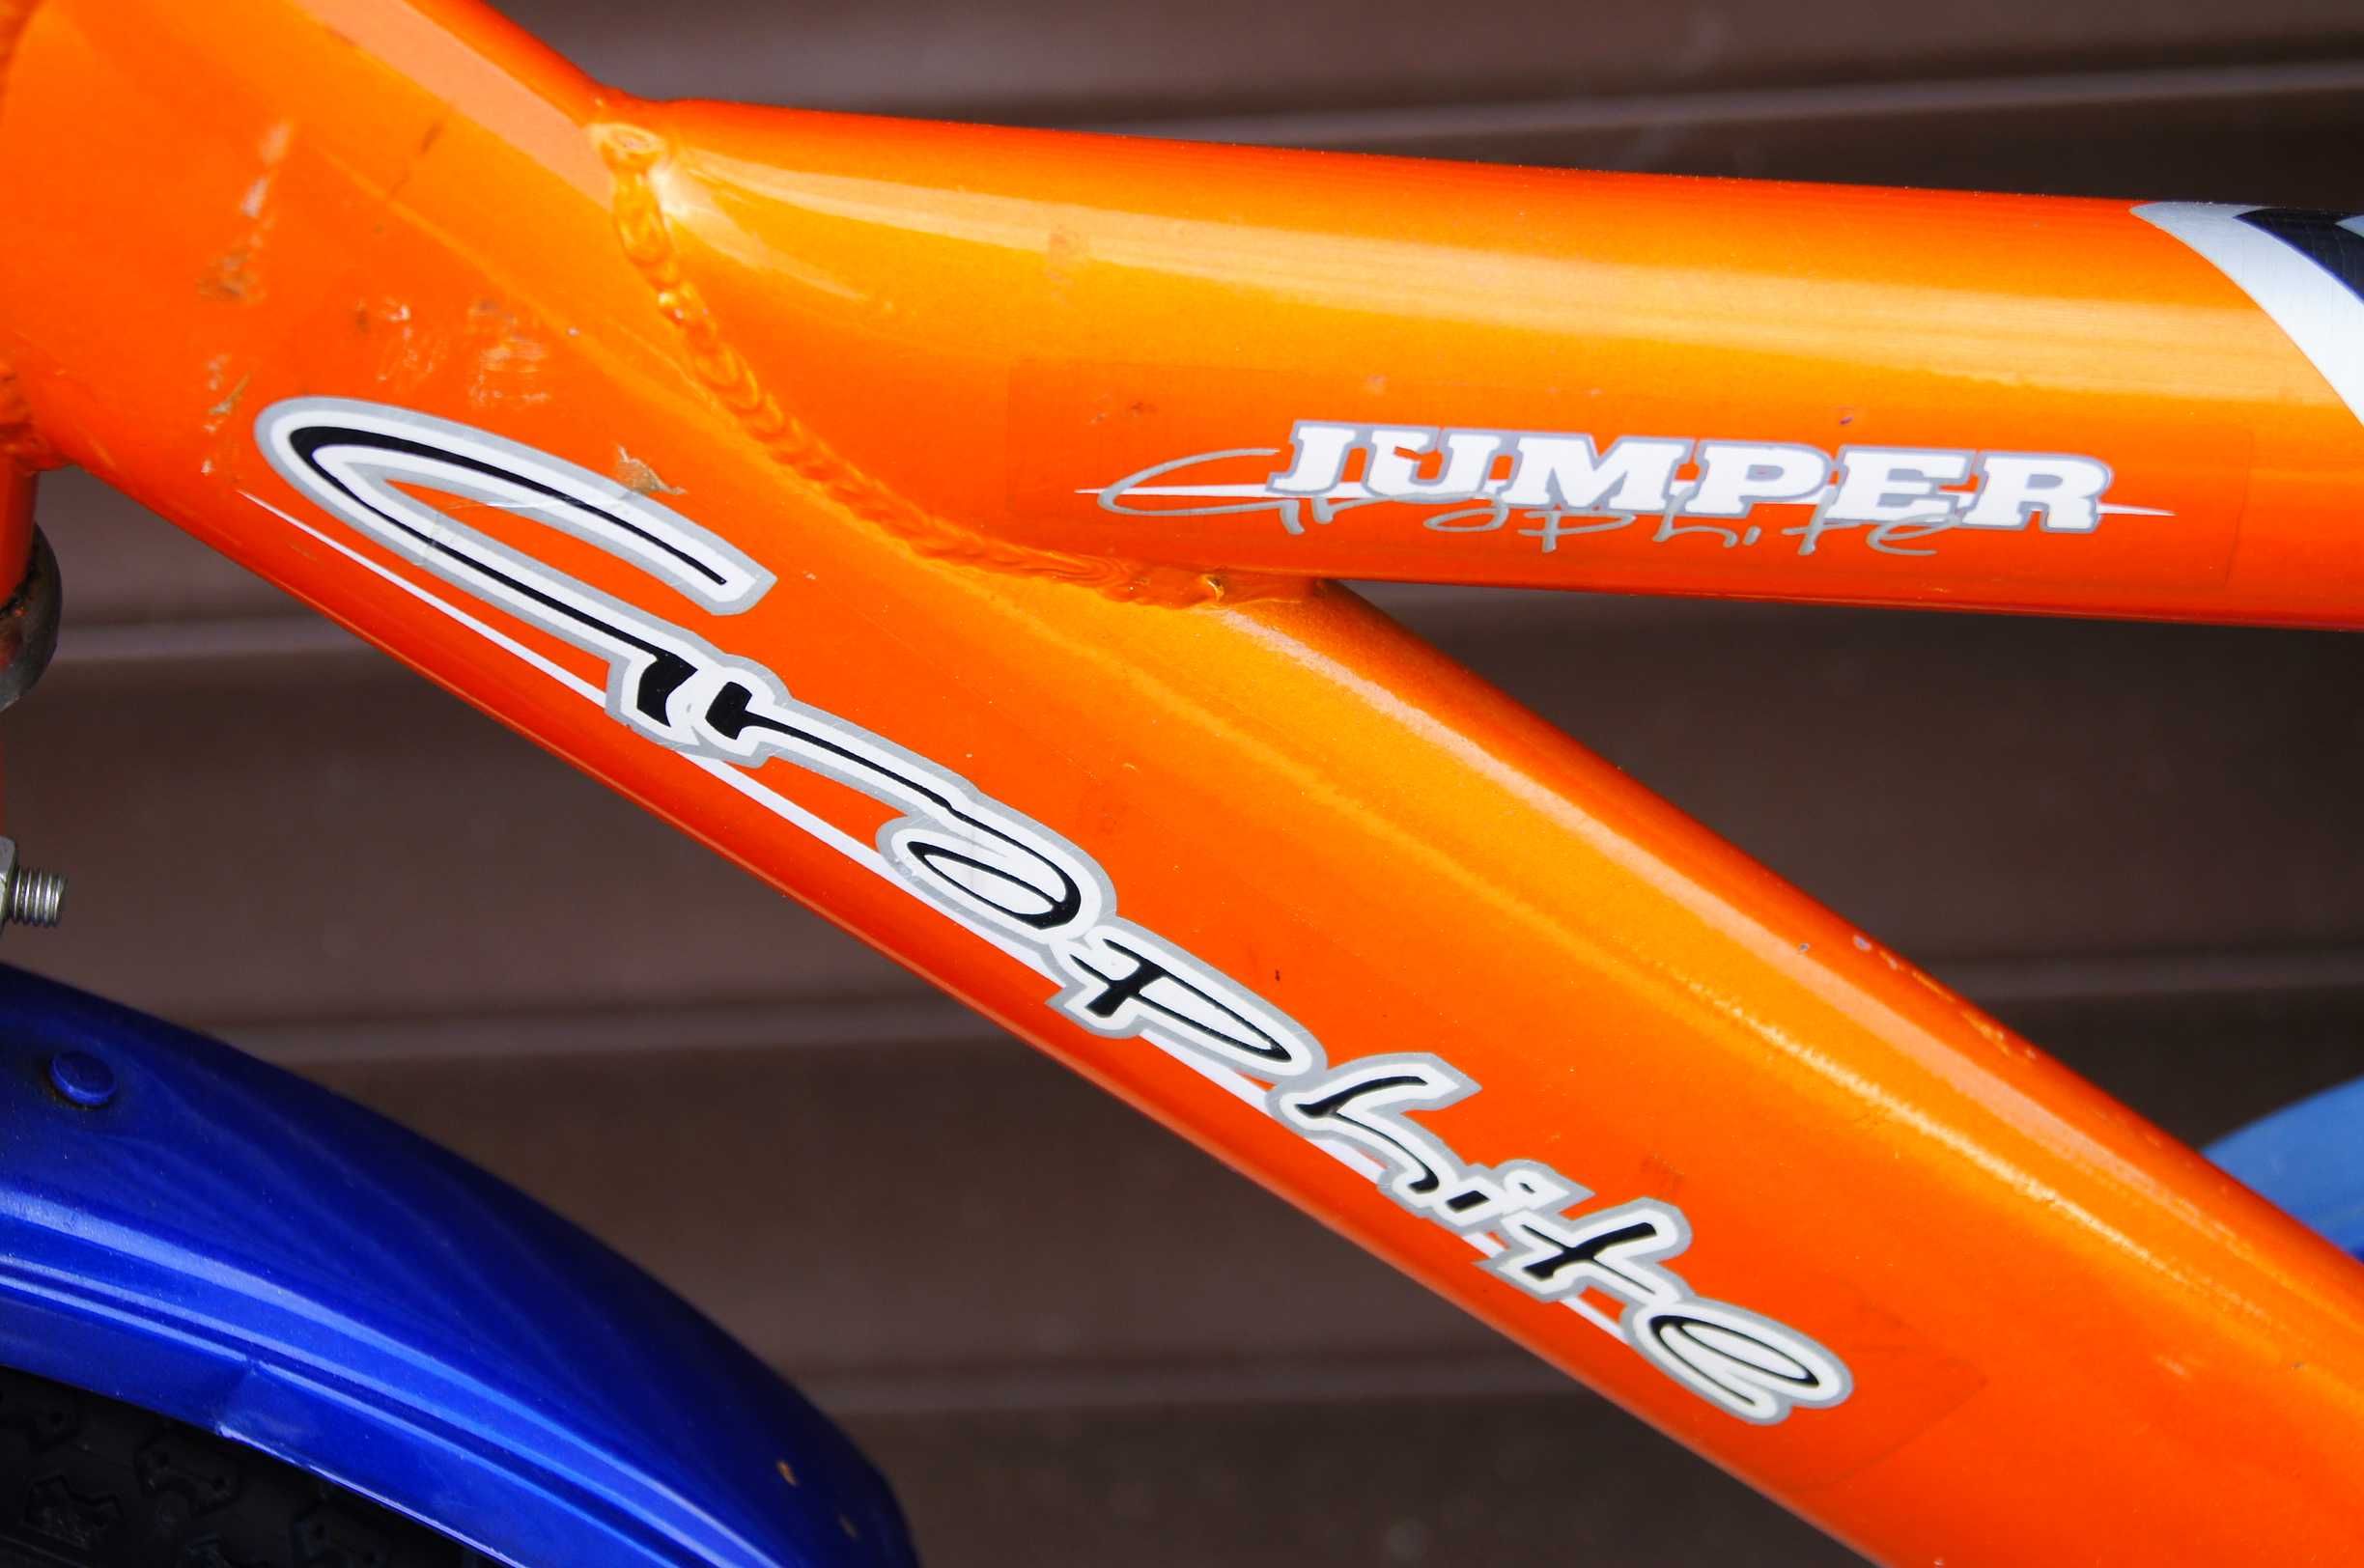 Rowerek GRAPHITE JUMPER 16' - nowe koła boczne, OPONY, siodełko !!